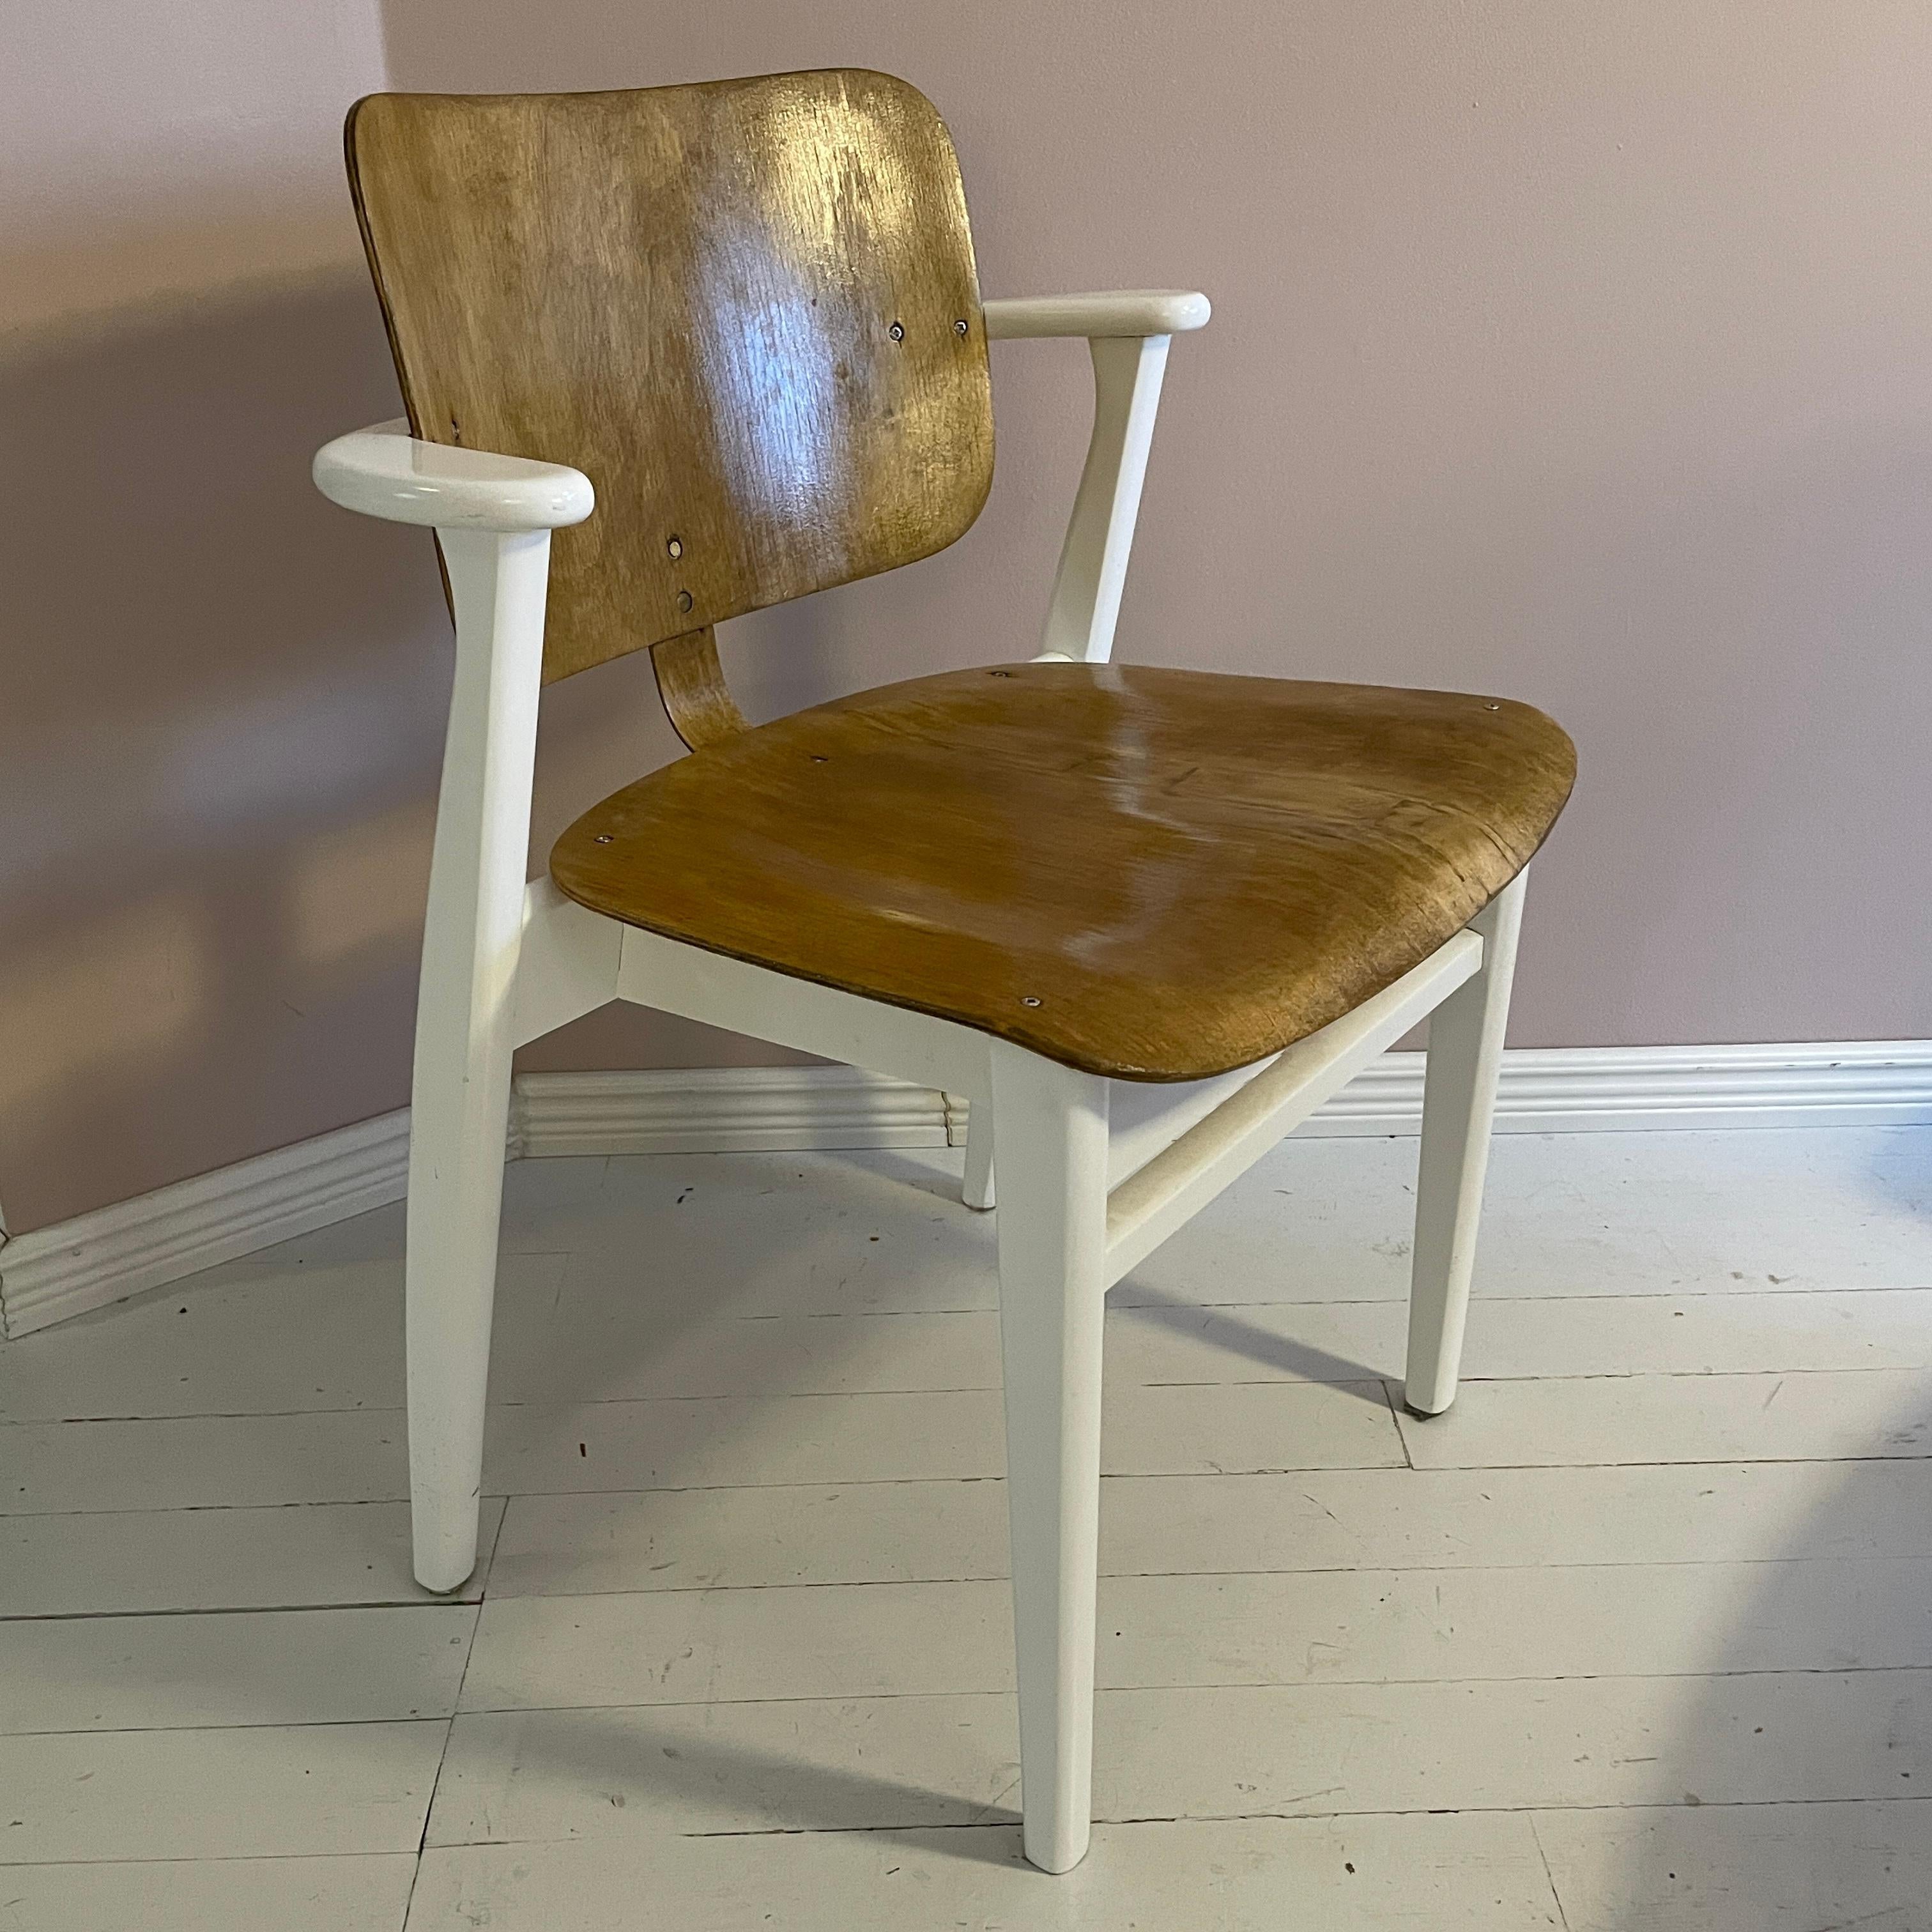 Der Stuhl Domus wurde 1946 von dem finnischen Innenarchitekten und Designer Ilmari Tapiovaara entworfen. Der Stuhl wurde für den Studentenwohnkomplex Domus Academica in Helsinki, Finnland, entworfen.
Der Domus Chair war international sehr